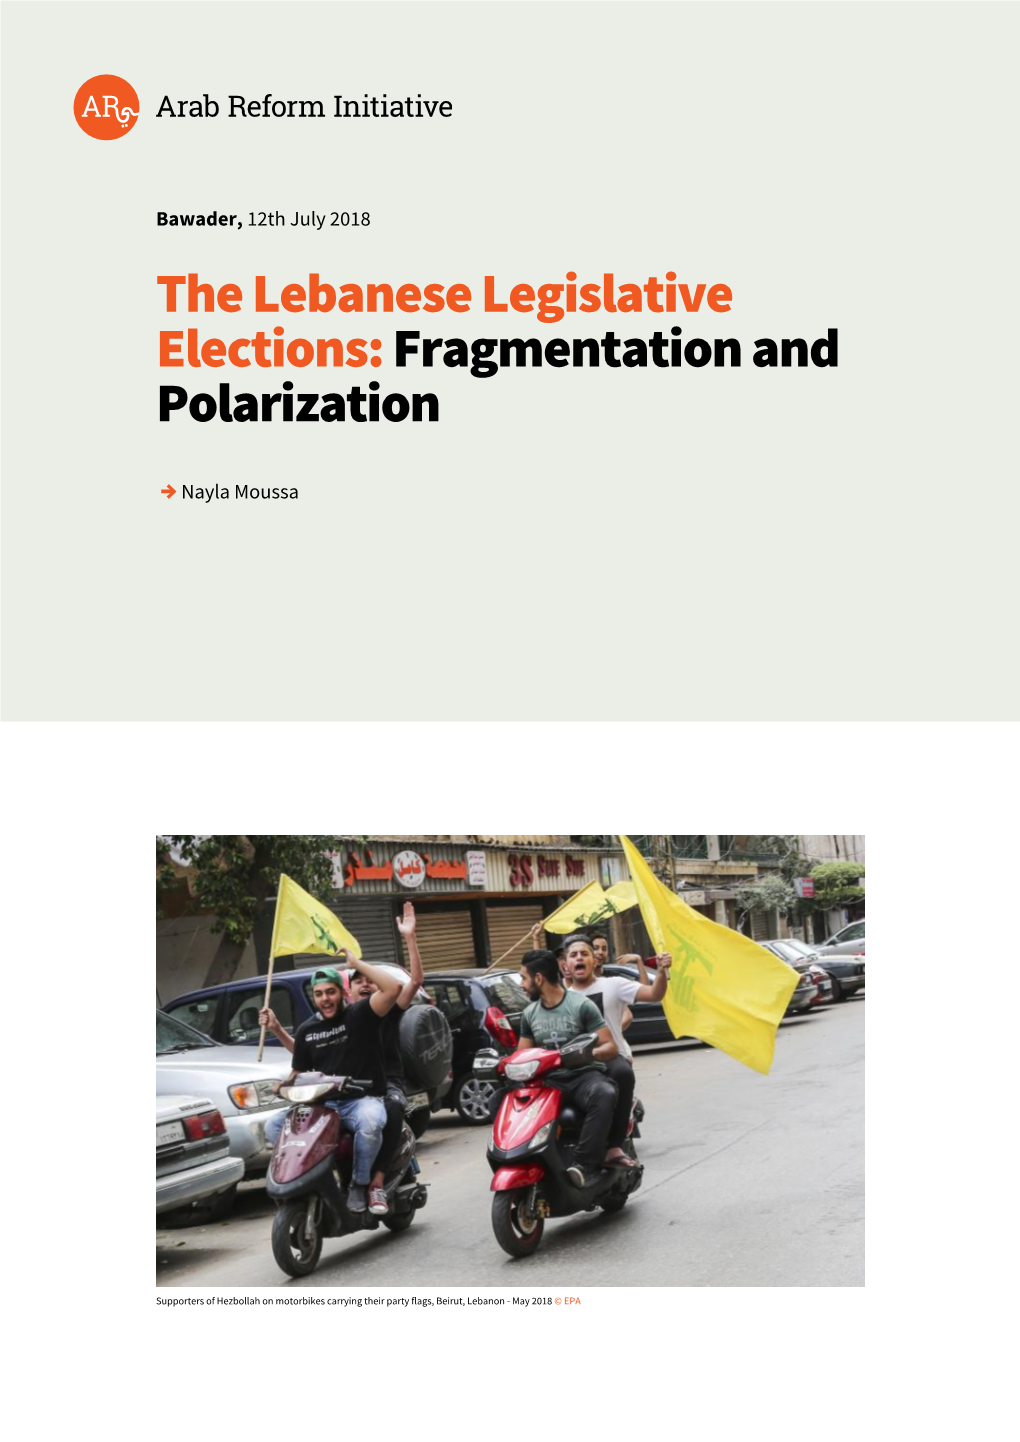 The Lebanese Legislative Elections: Fragmentation and Polarization